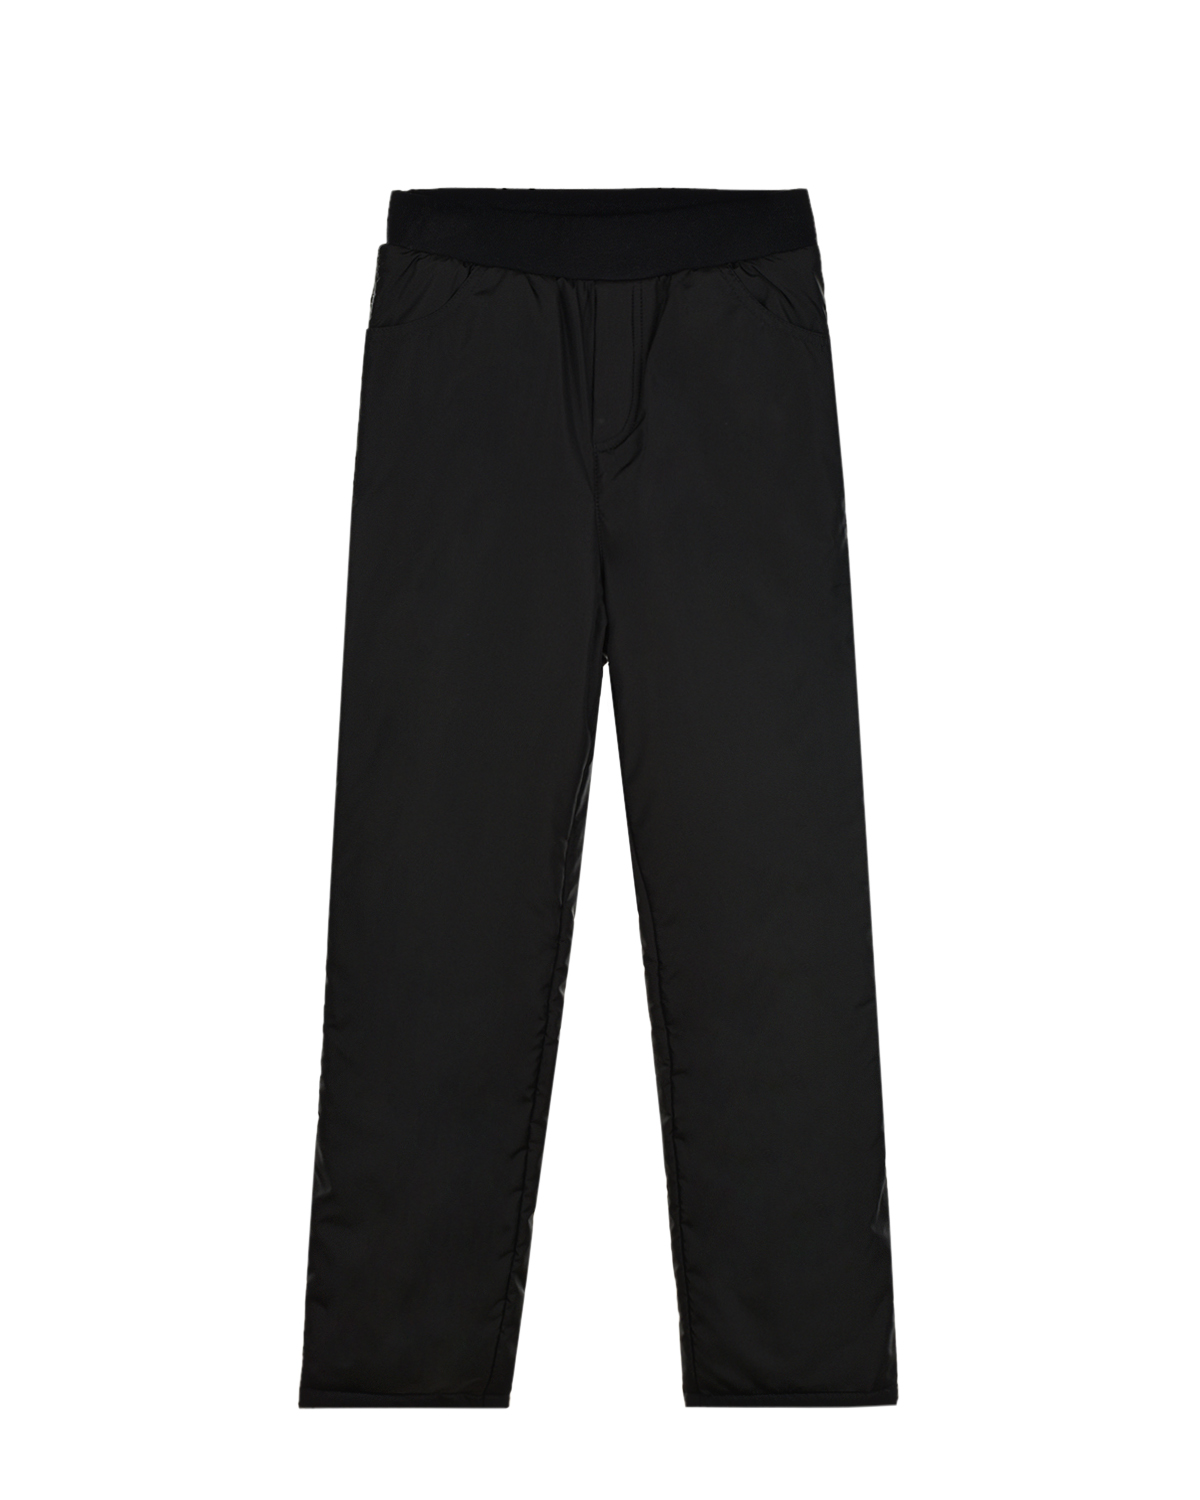 Черные утепленные брюки Dan Maralex детские, размер 140, цвет нет цвета - фото 1